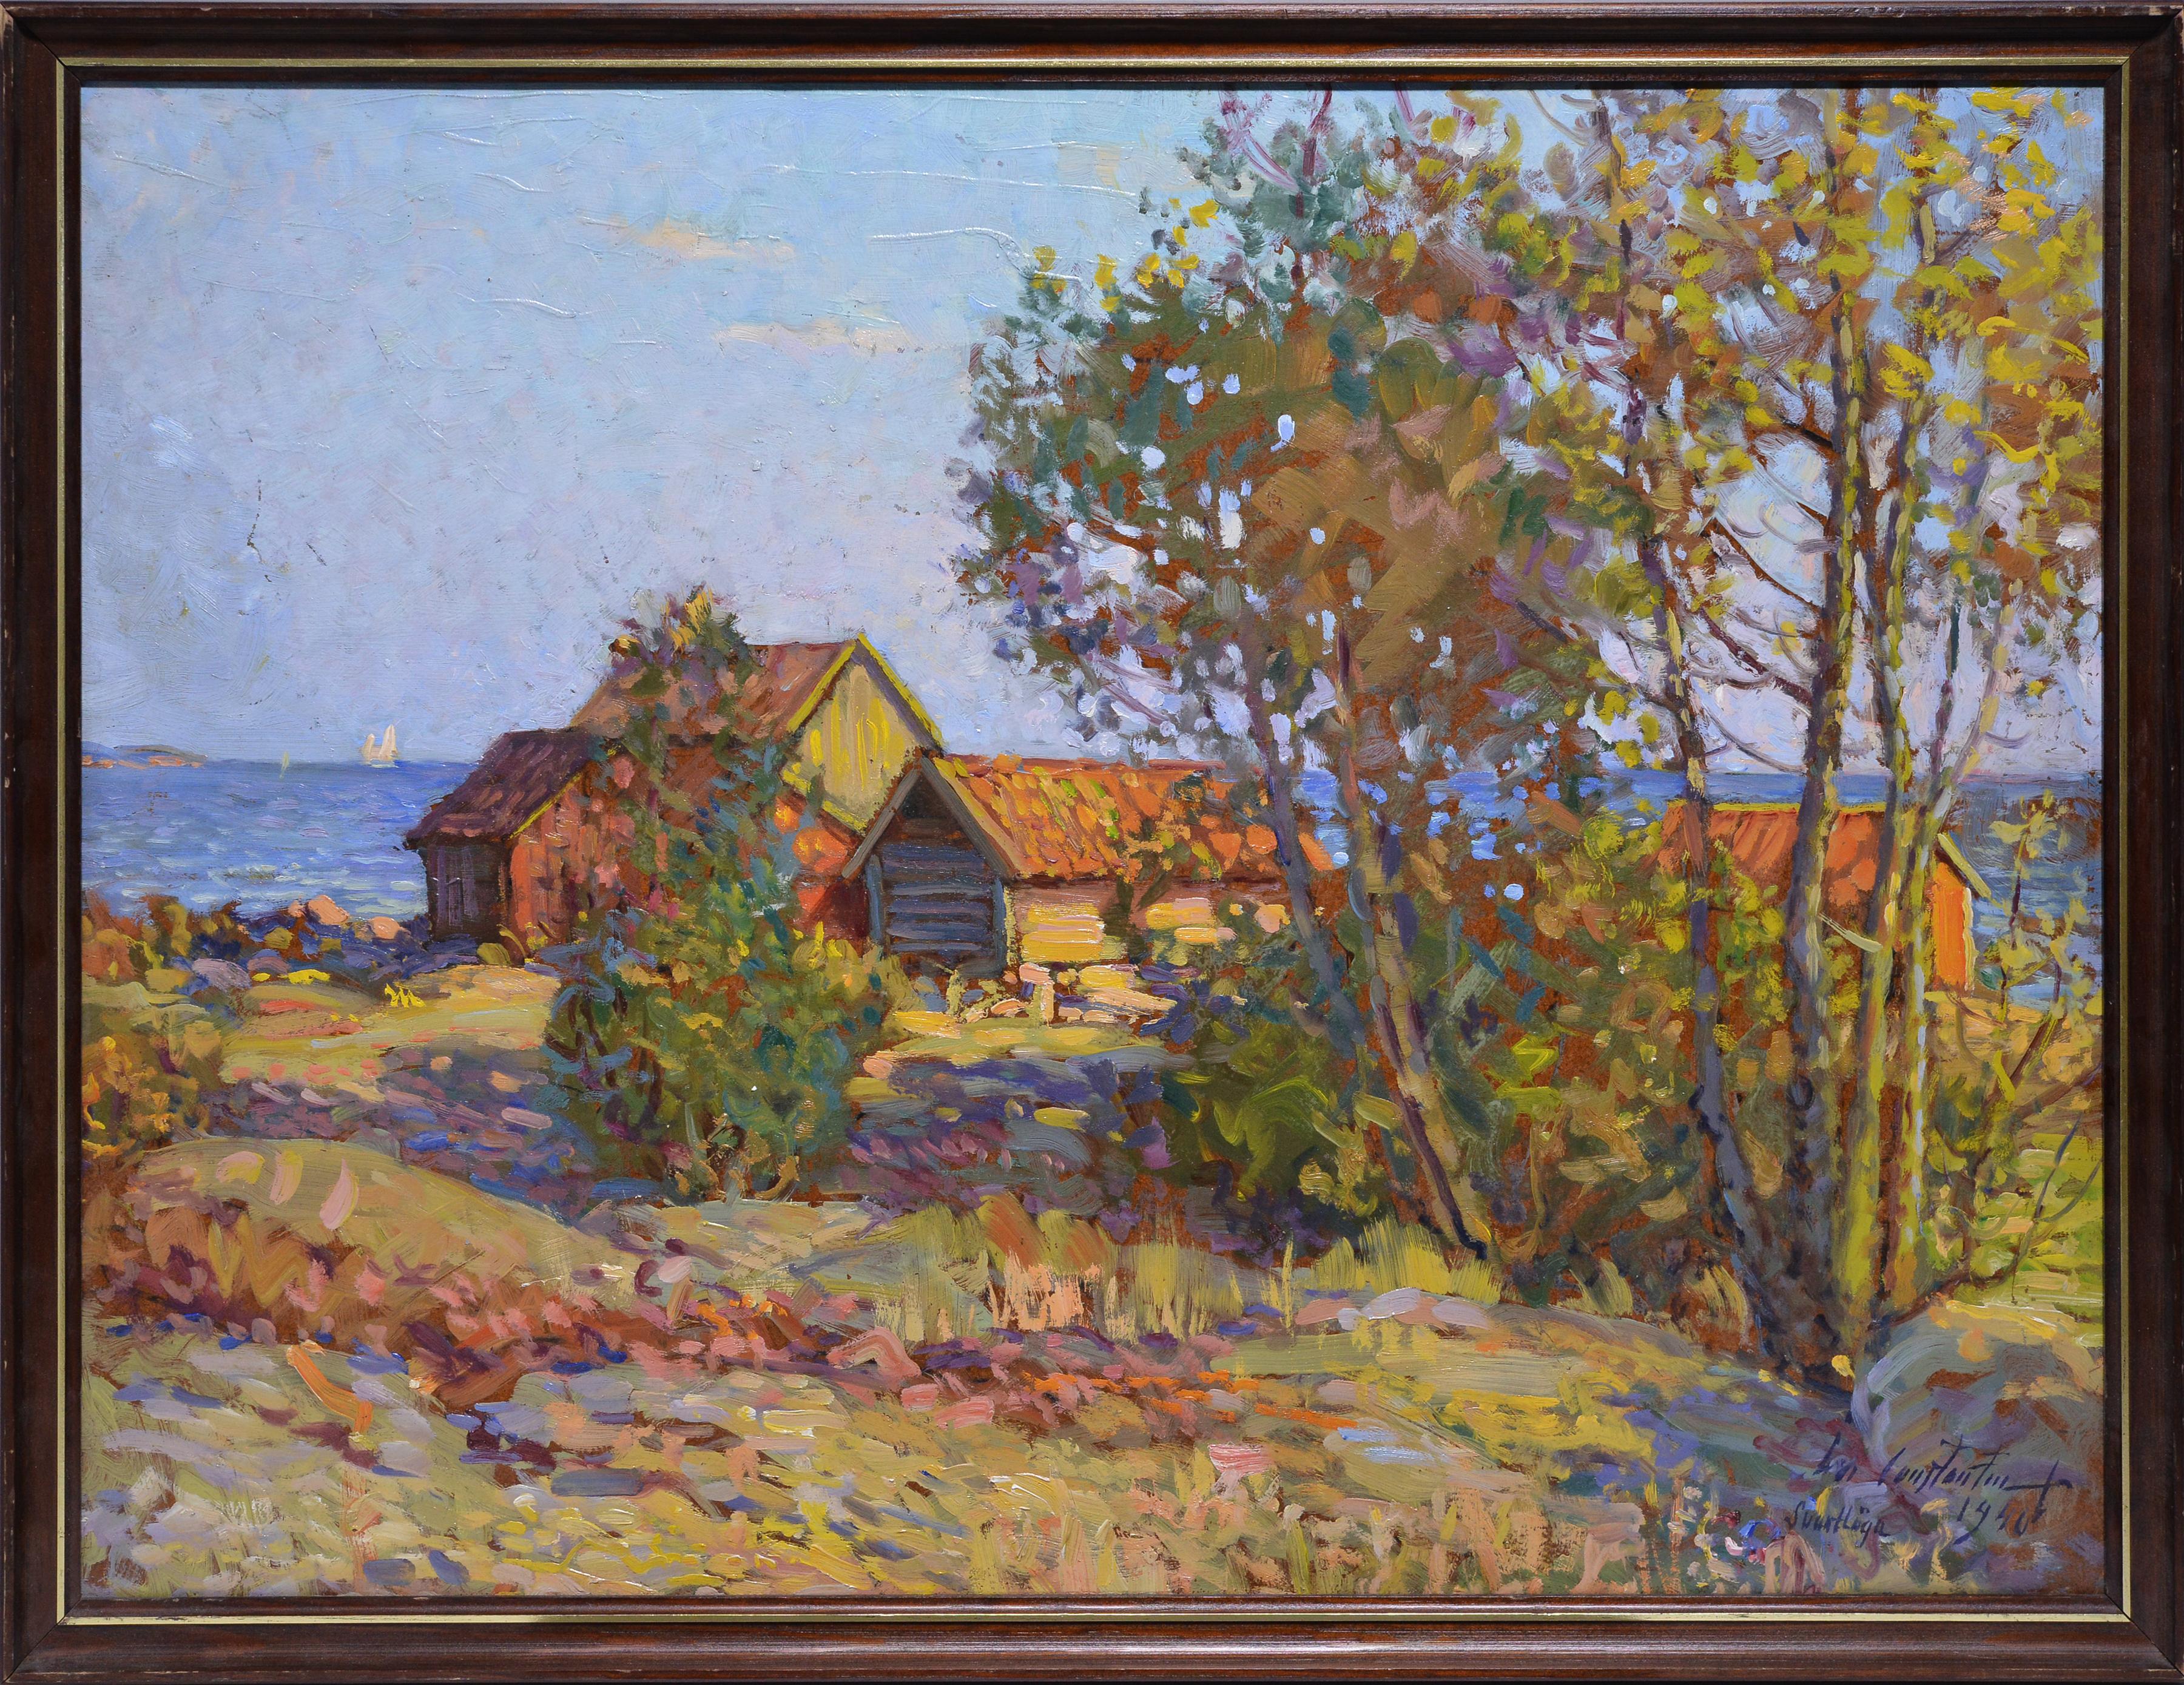 Ivan Constantin Sannesjö Johansson Landscape Painting – Stockholmer Archipelago-Landschaft 1940, Ölgemälde, bekannter impressionistischer Künstler 